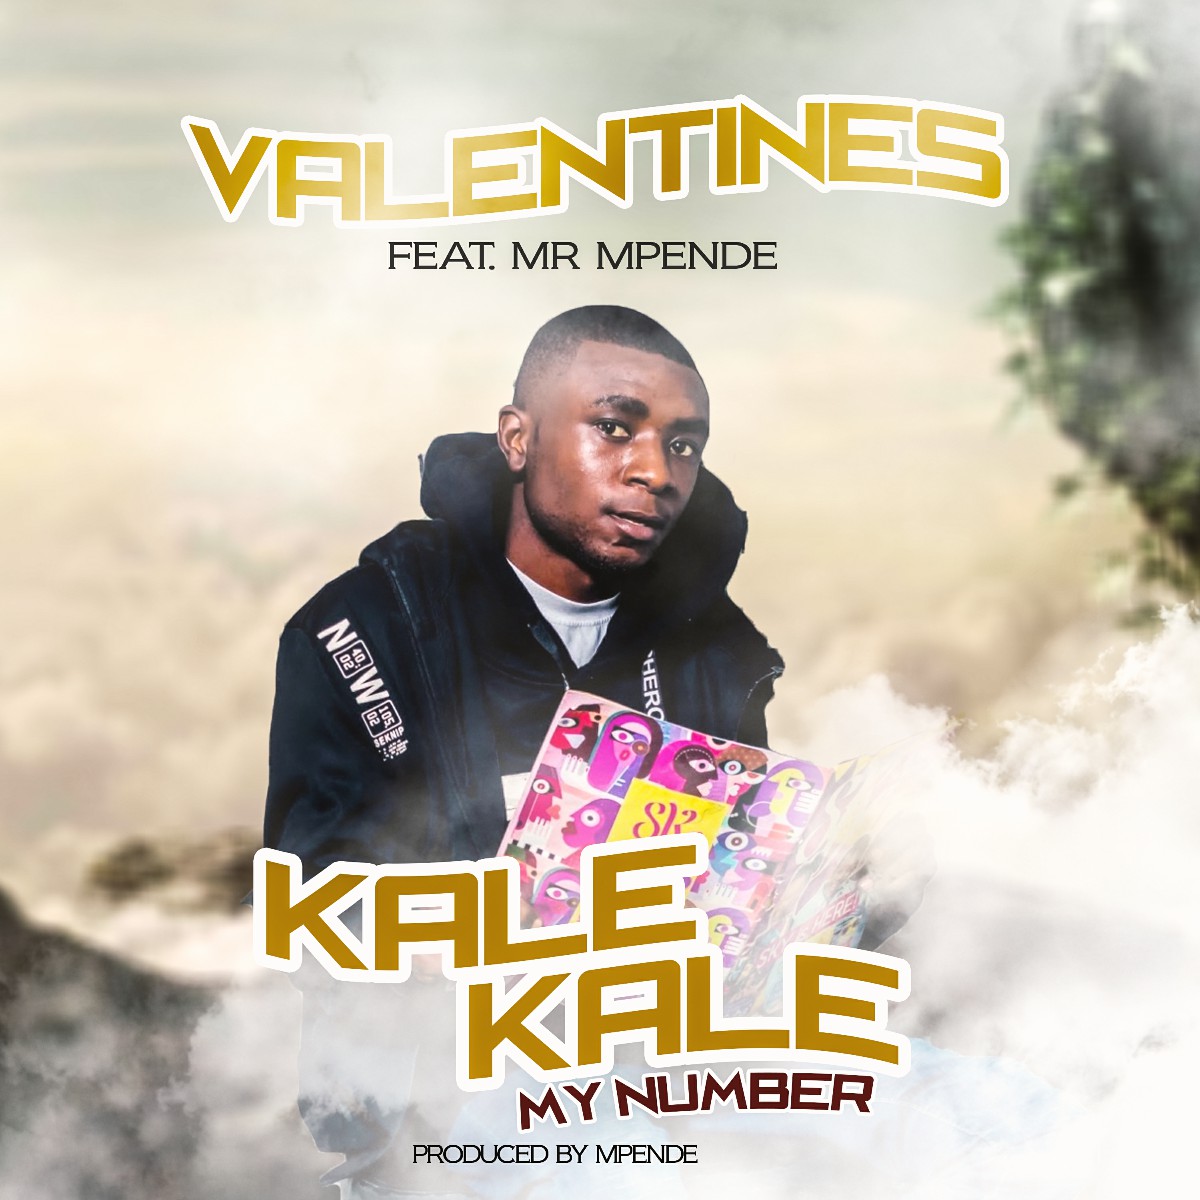 Valentines ft. Mr Mpende - Kale Kale My Number